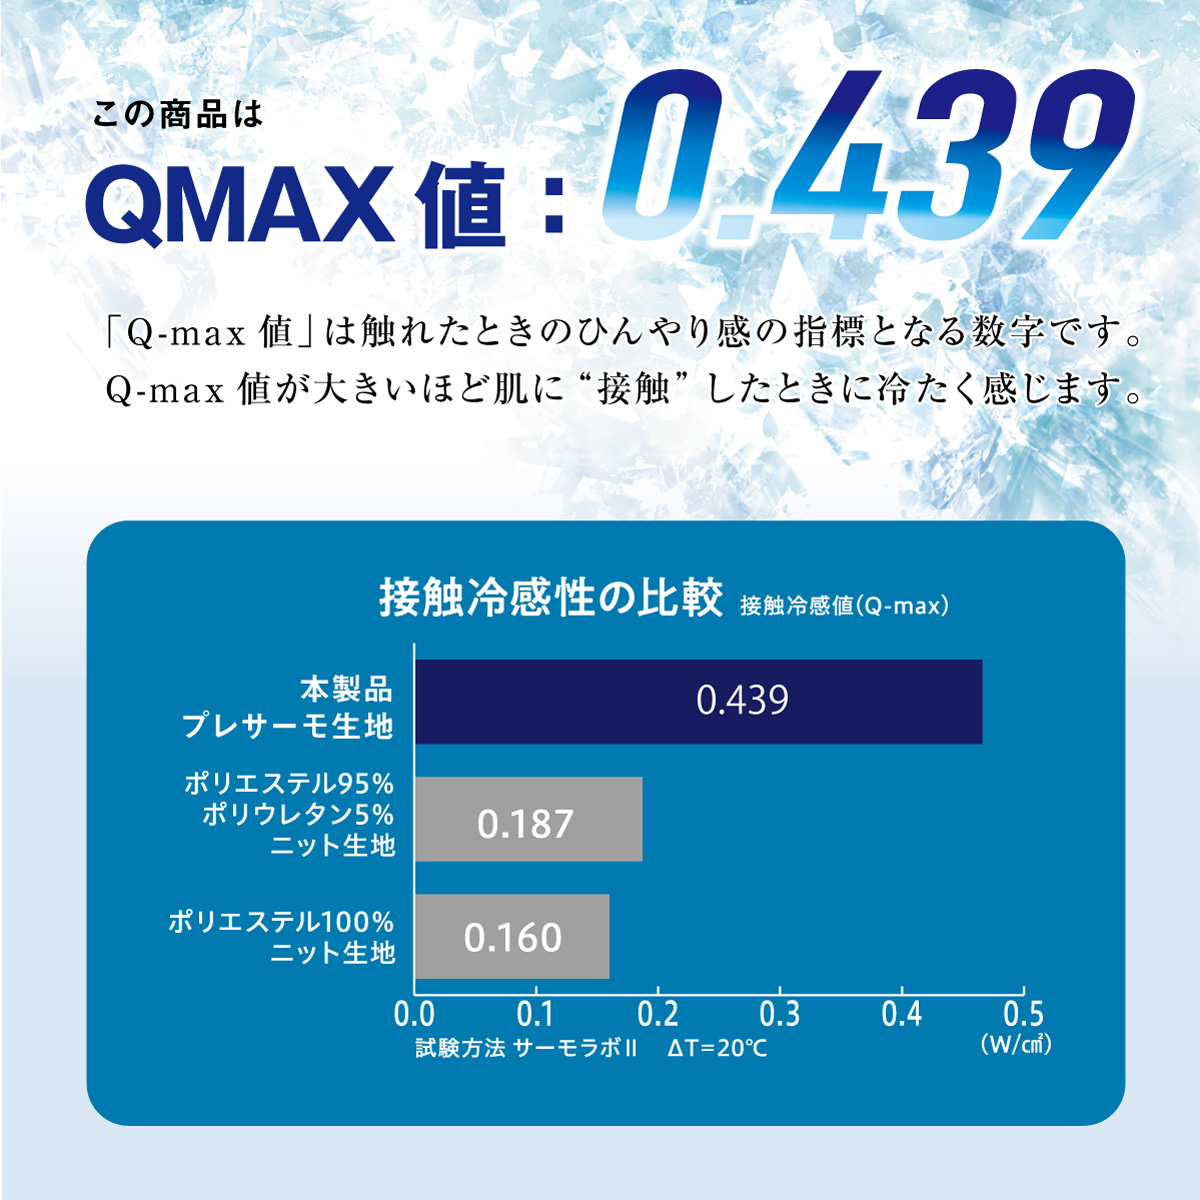 Q-max値は触れたときのひんやり感の指標となる数字です。Q-max値が大きいほど肌に“接触”したときに冷たく感じます。
